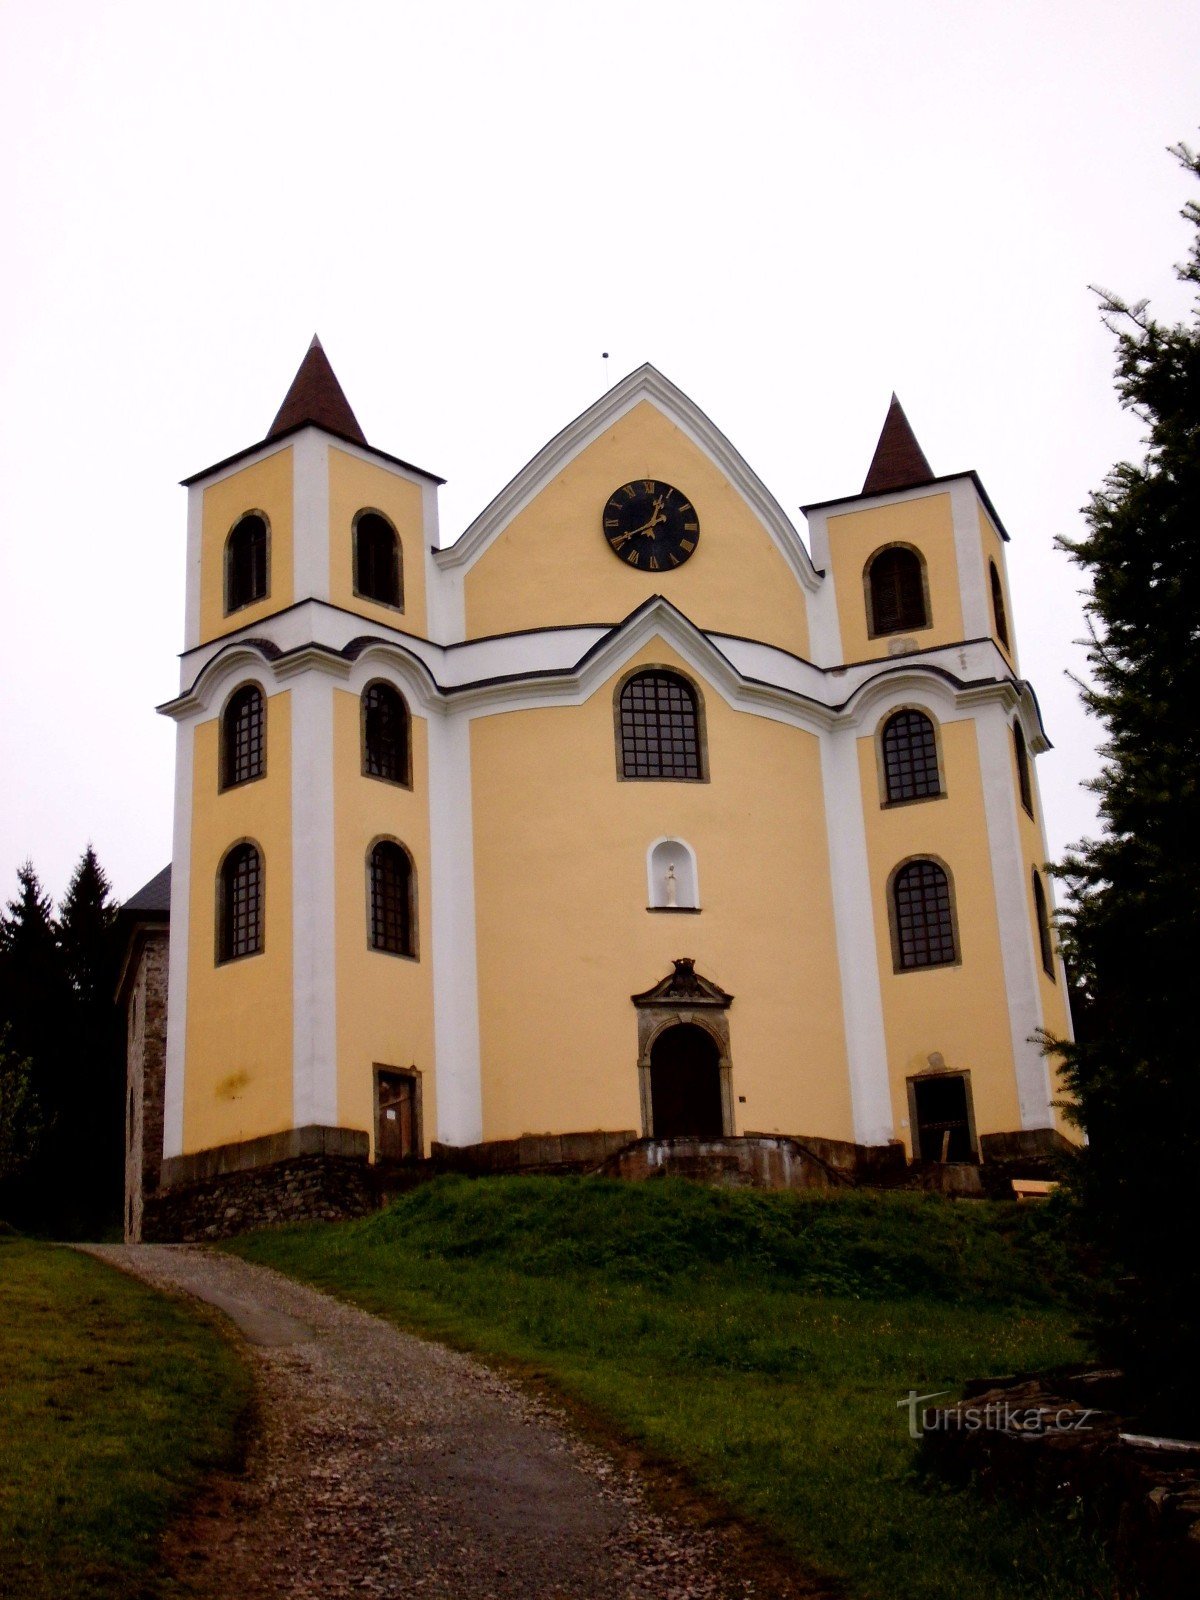 Tour della chiesa ciclo di Orlické